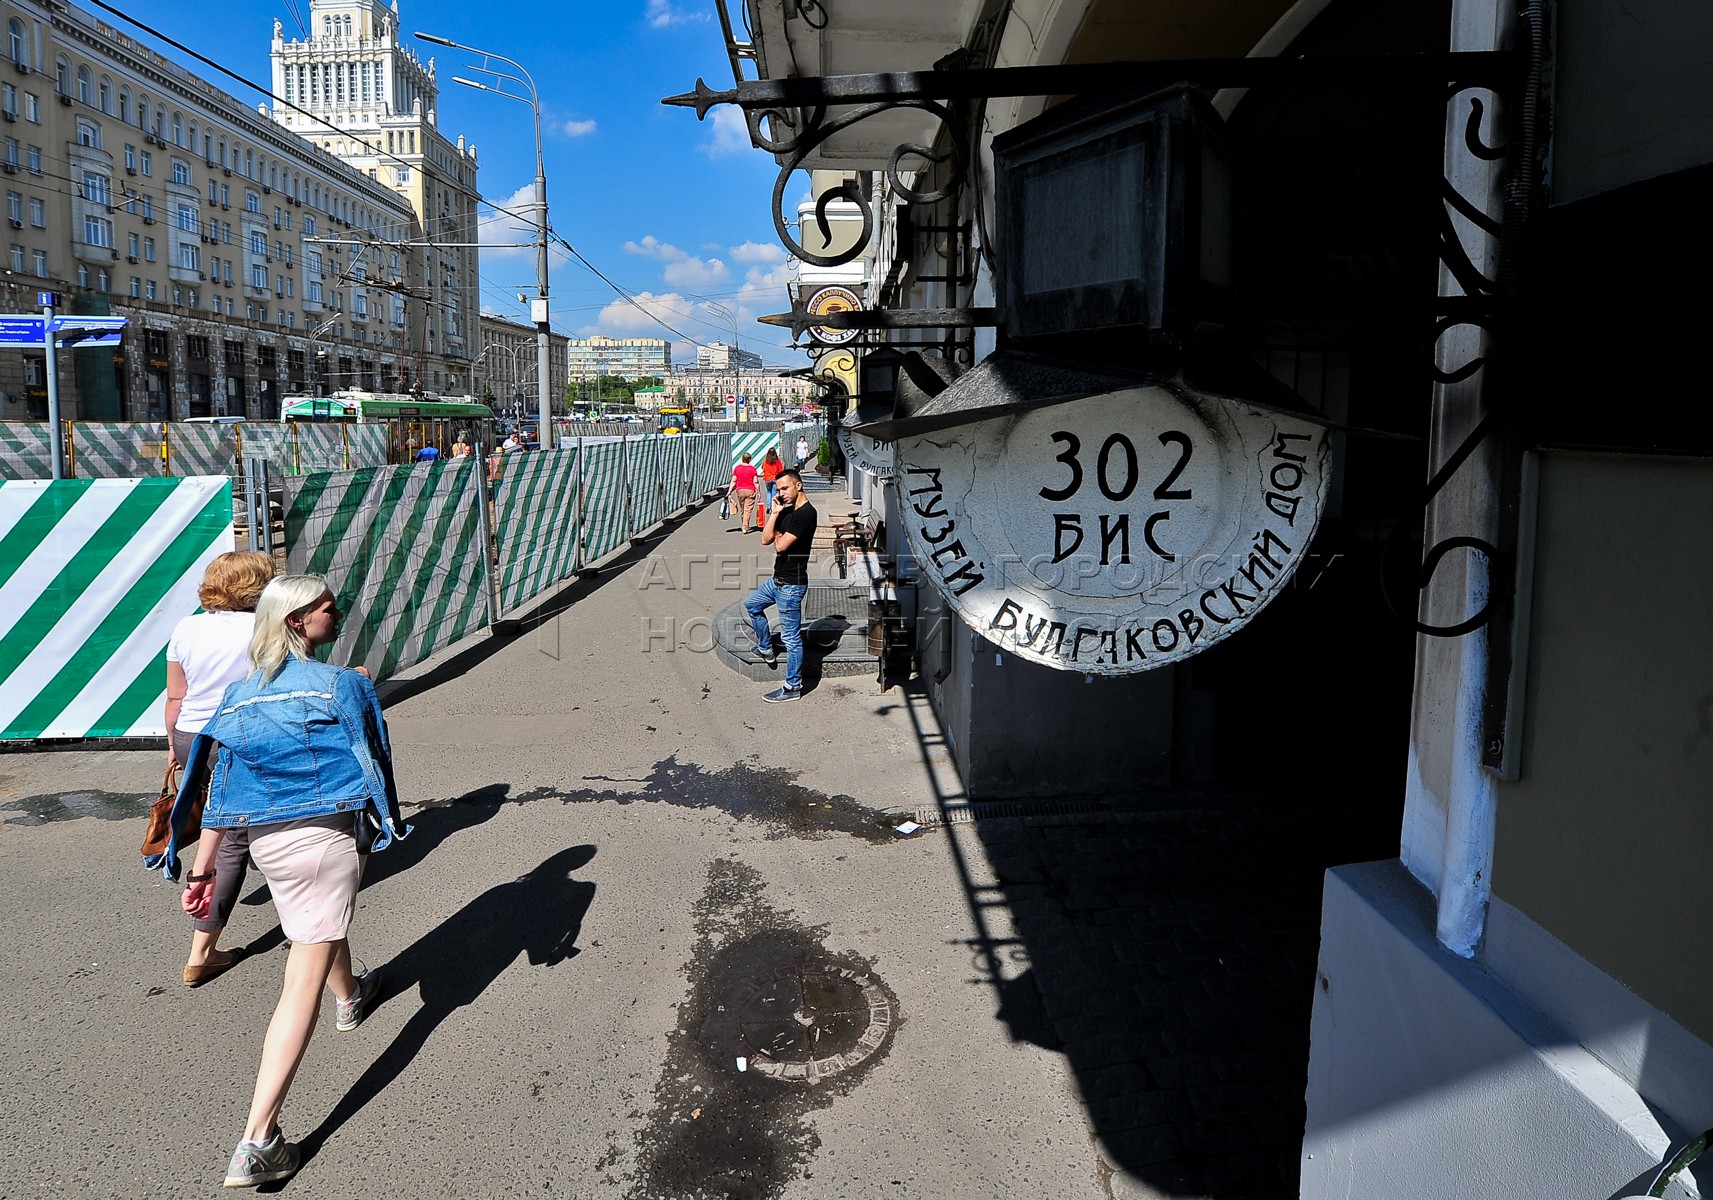 Художественный арбатская площадь 14. Люди в городе фото. Санкт-Петербург сейчас.